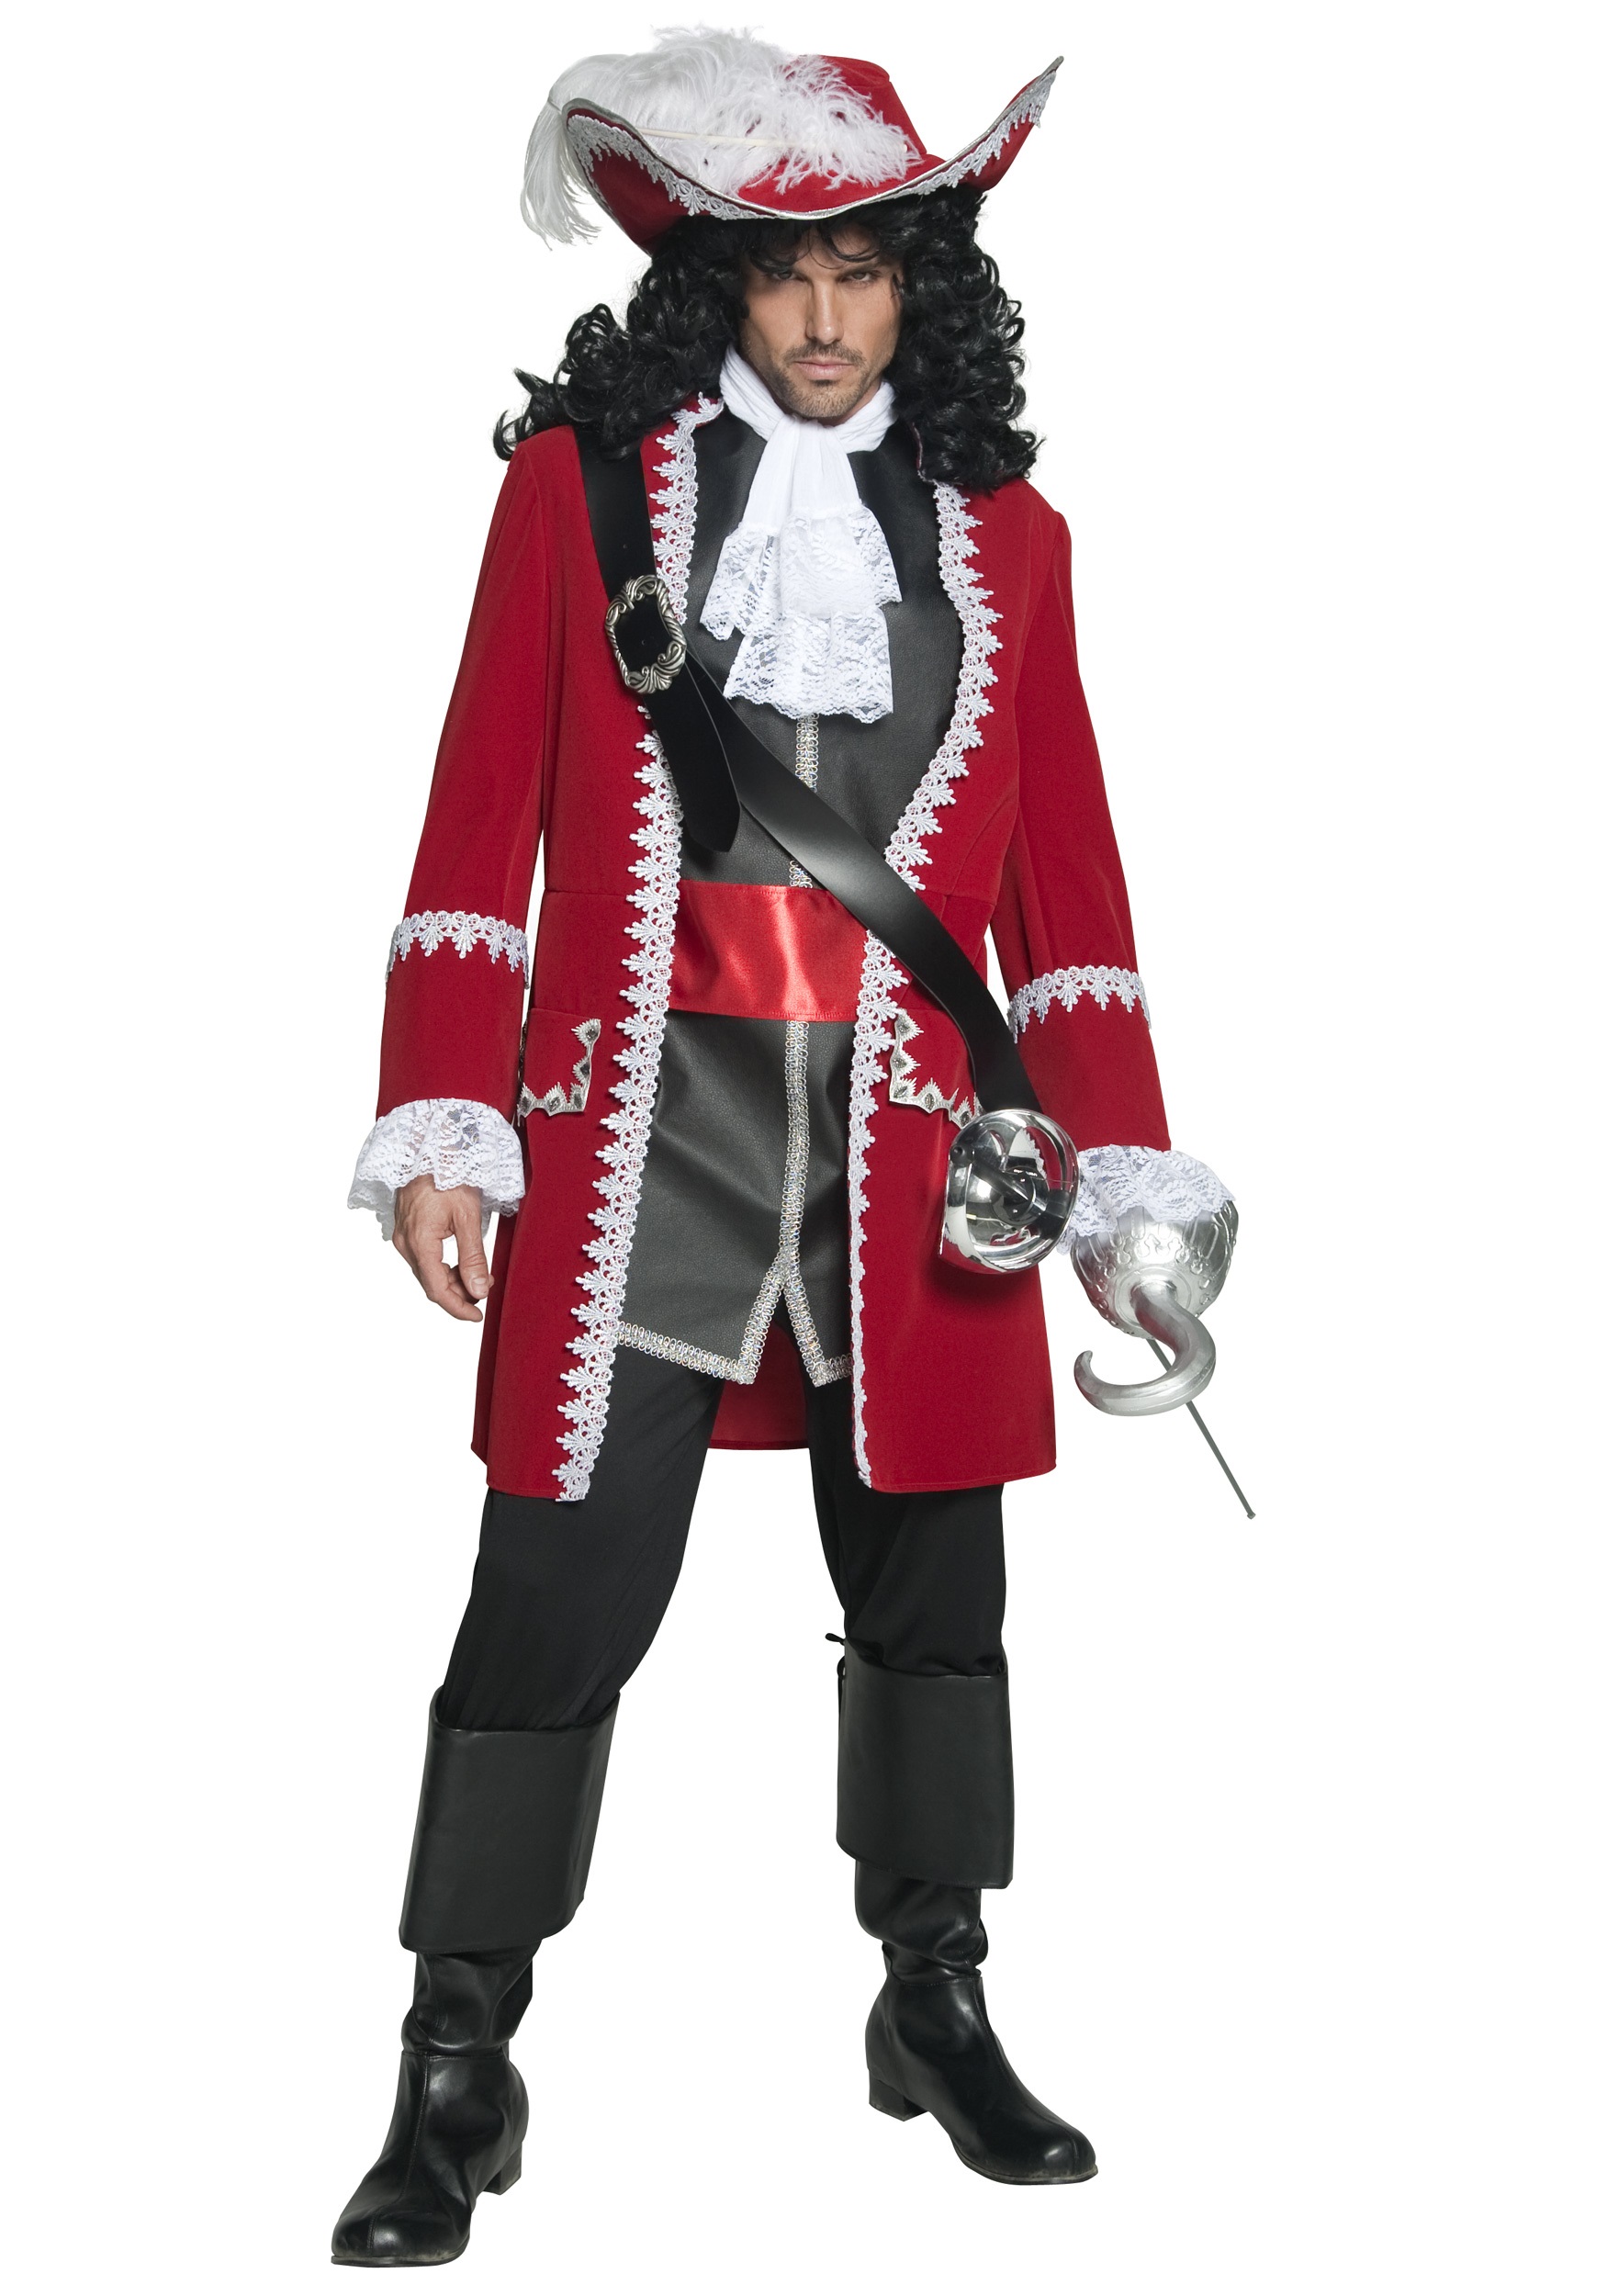 Regal Pirate Captain Costume for Men